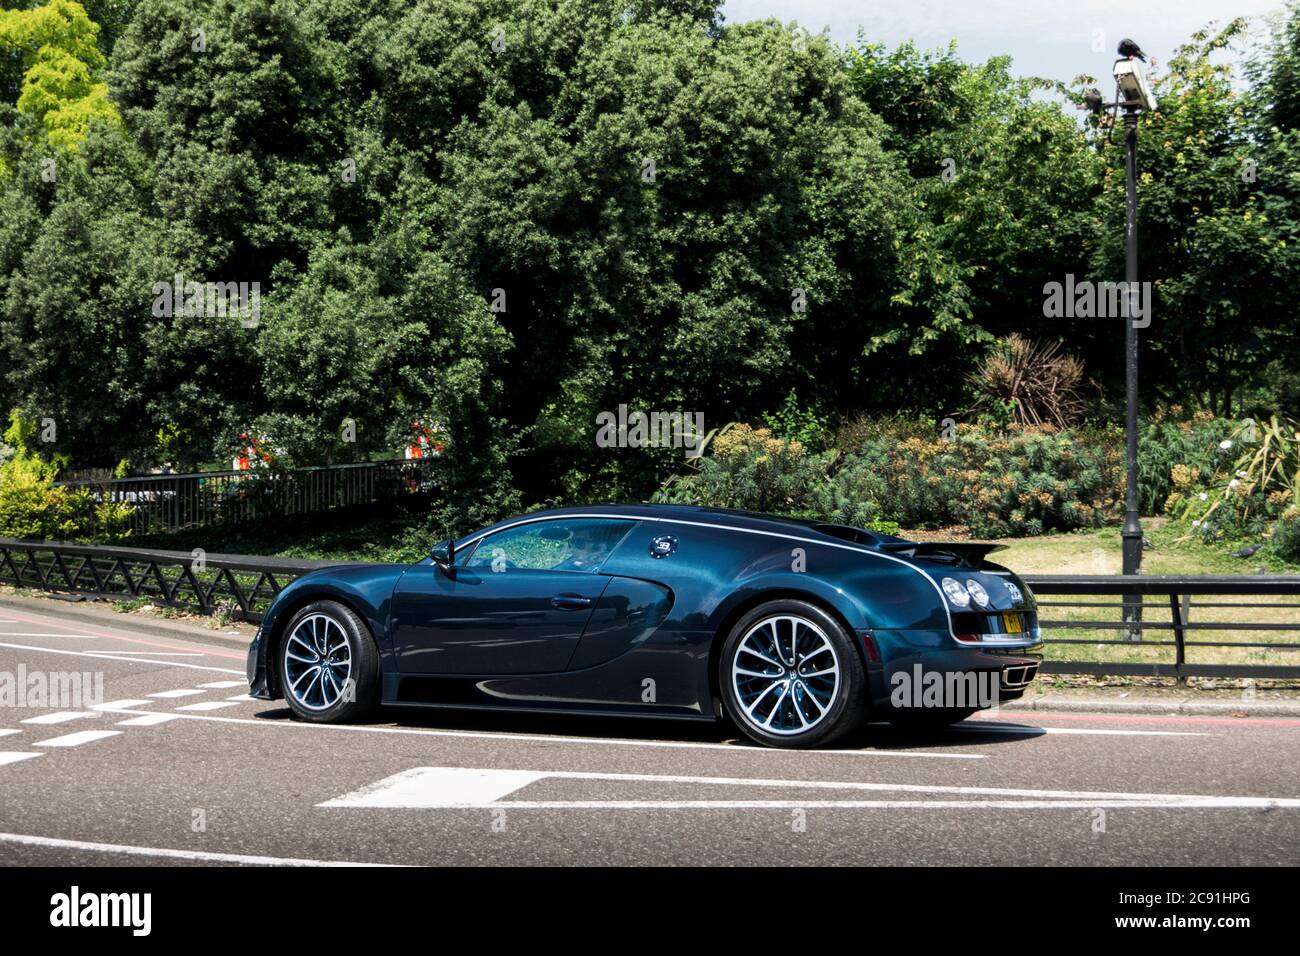 Fibre de carbone bleue Bugatti Veyron Super Sport Supercar moderne conduit dans le quartier de Mayfair, dans le centre de Londres, dans le cadre d'un rassemblement automobile. Banque D'Images